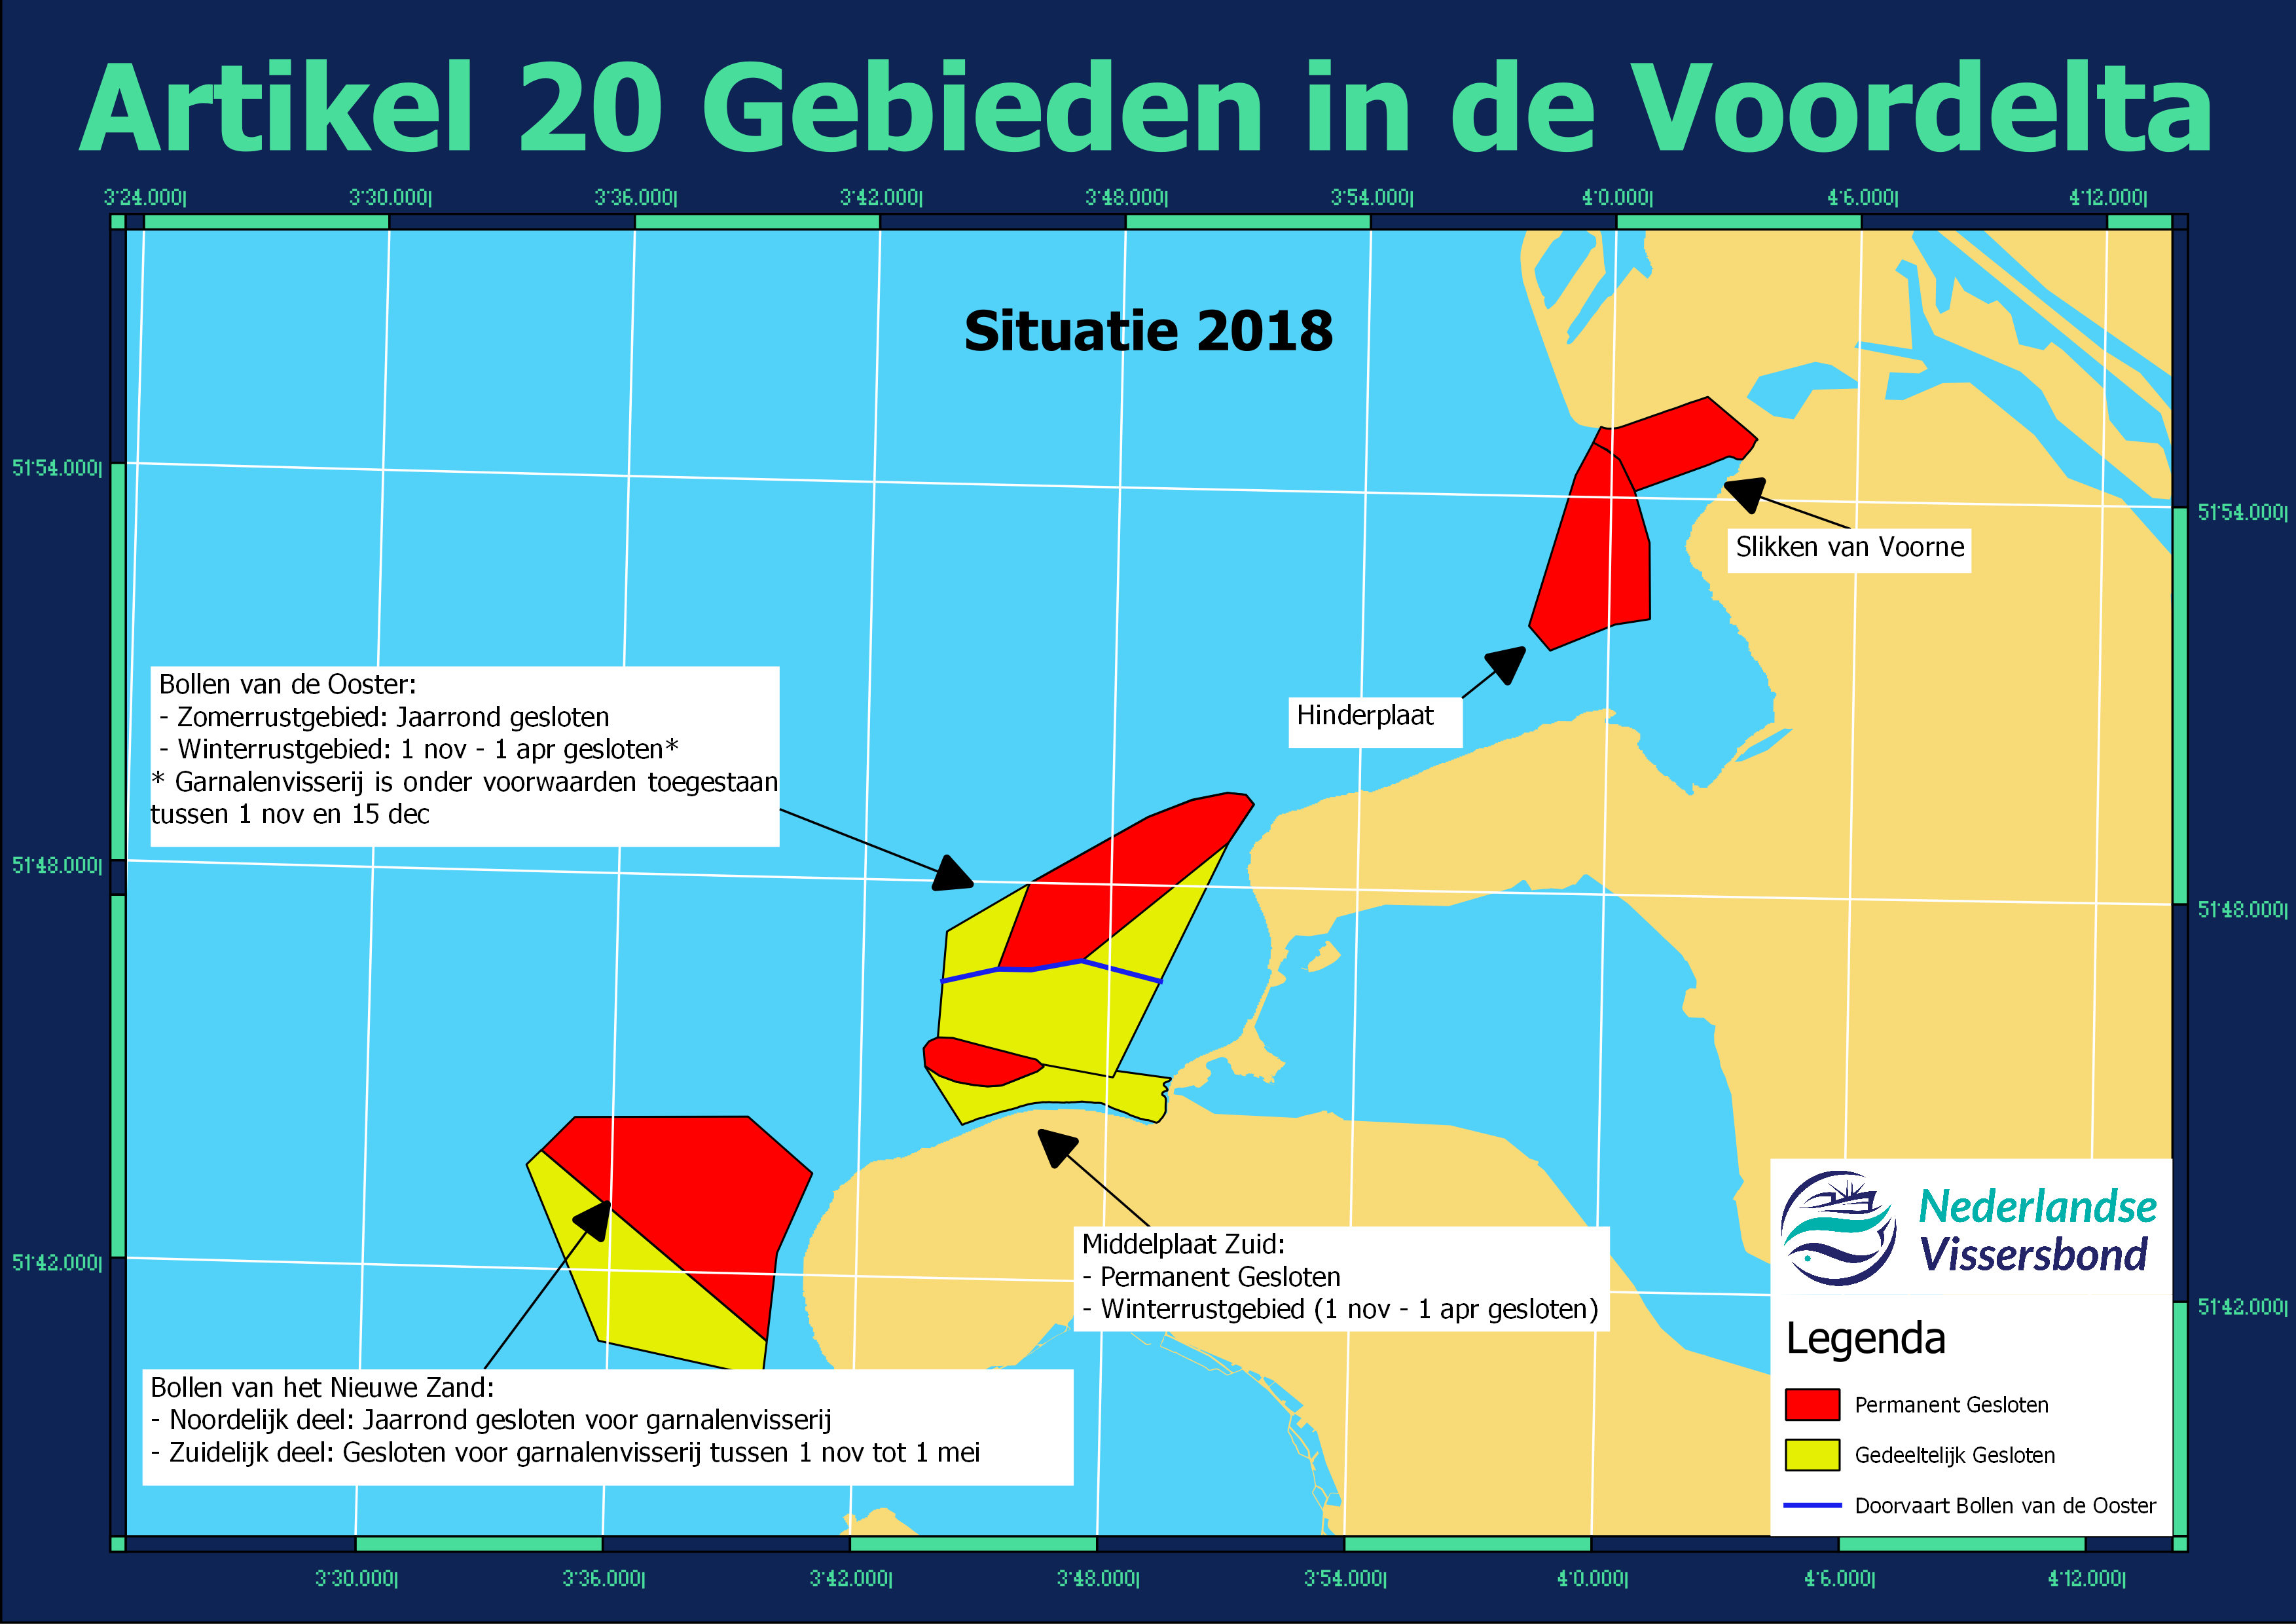 Artikel 20 gebieden in de Voordelta 2018